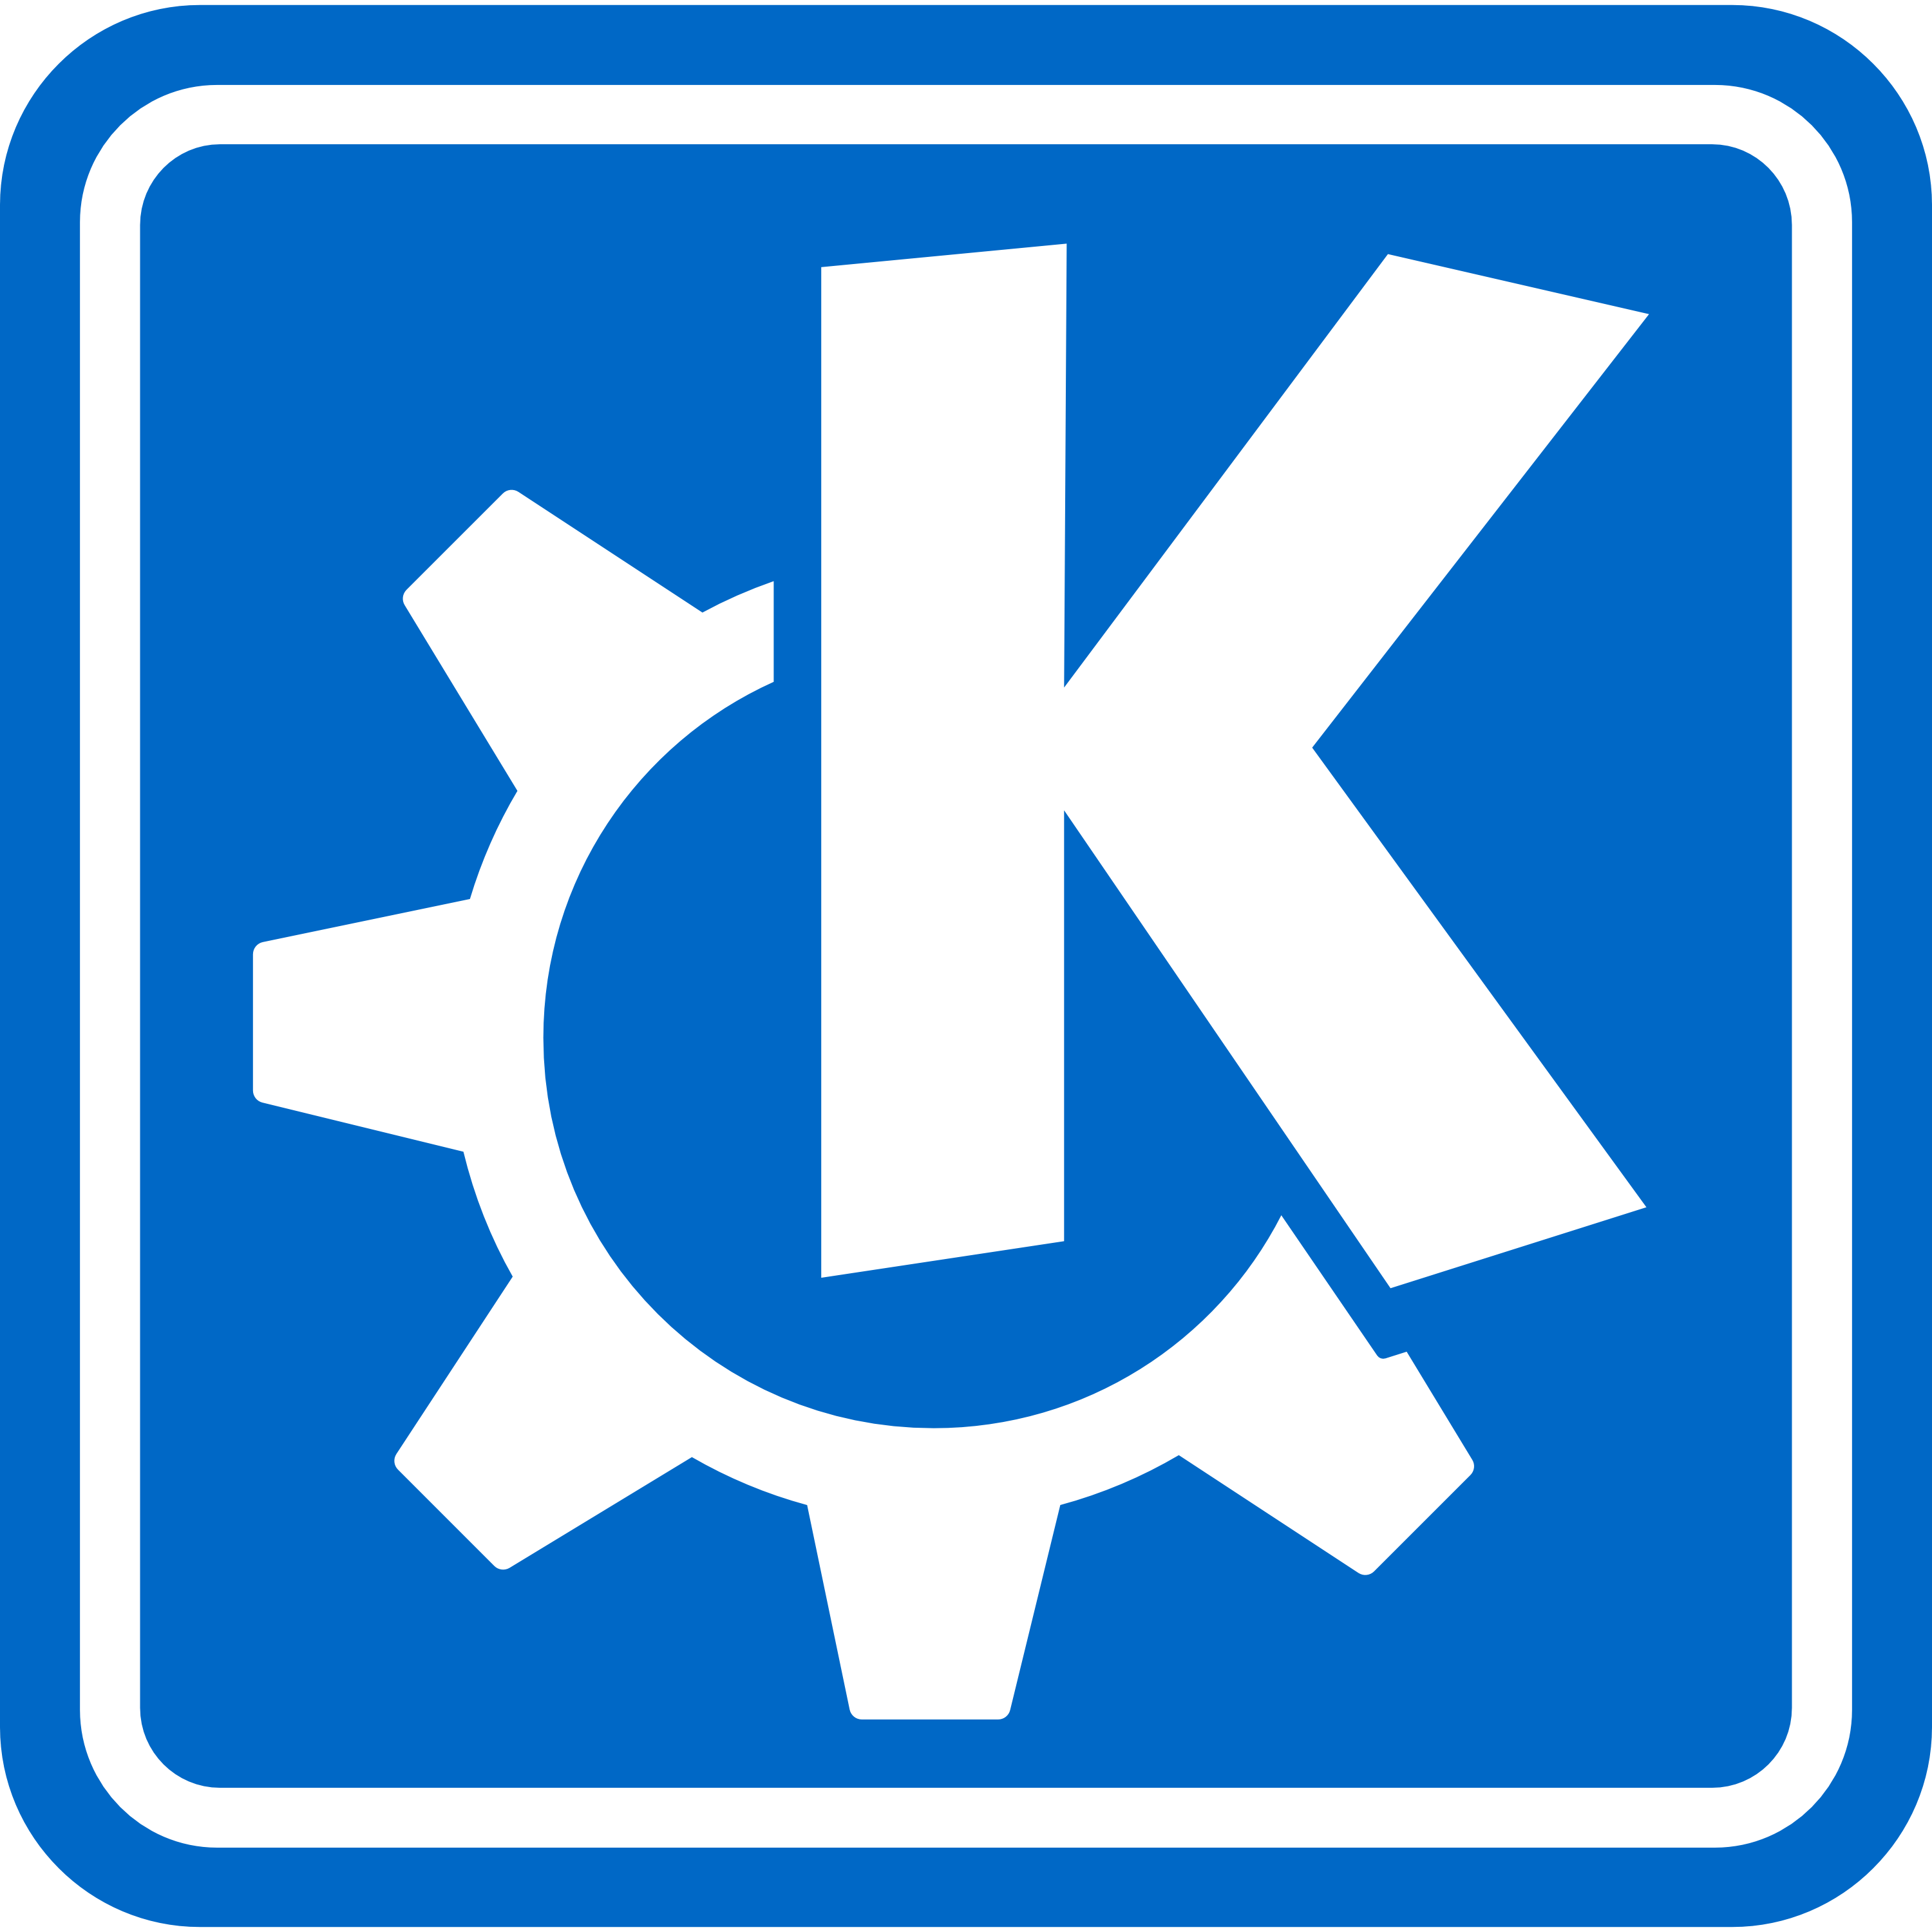 KDE Logo - Press Kit: KDE Clipart - KDE.org